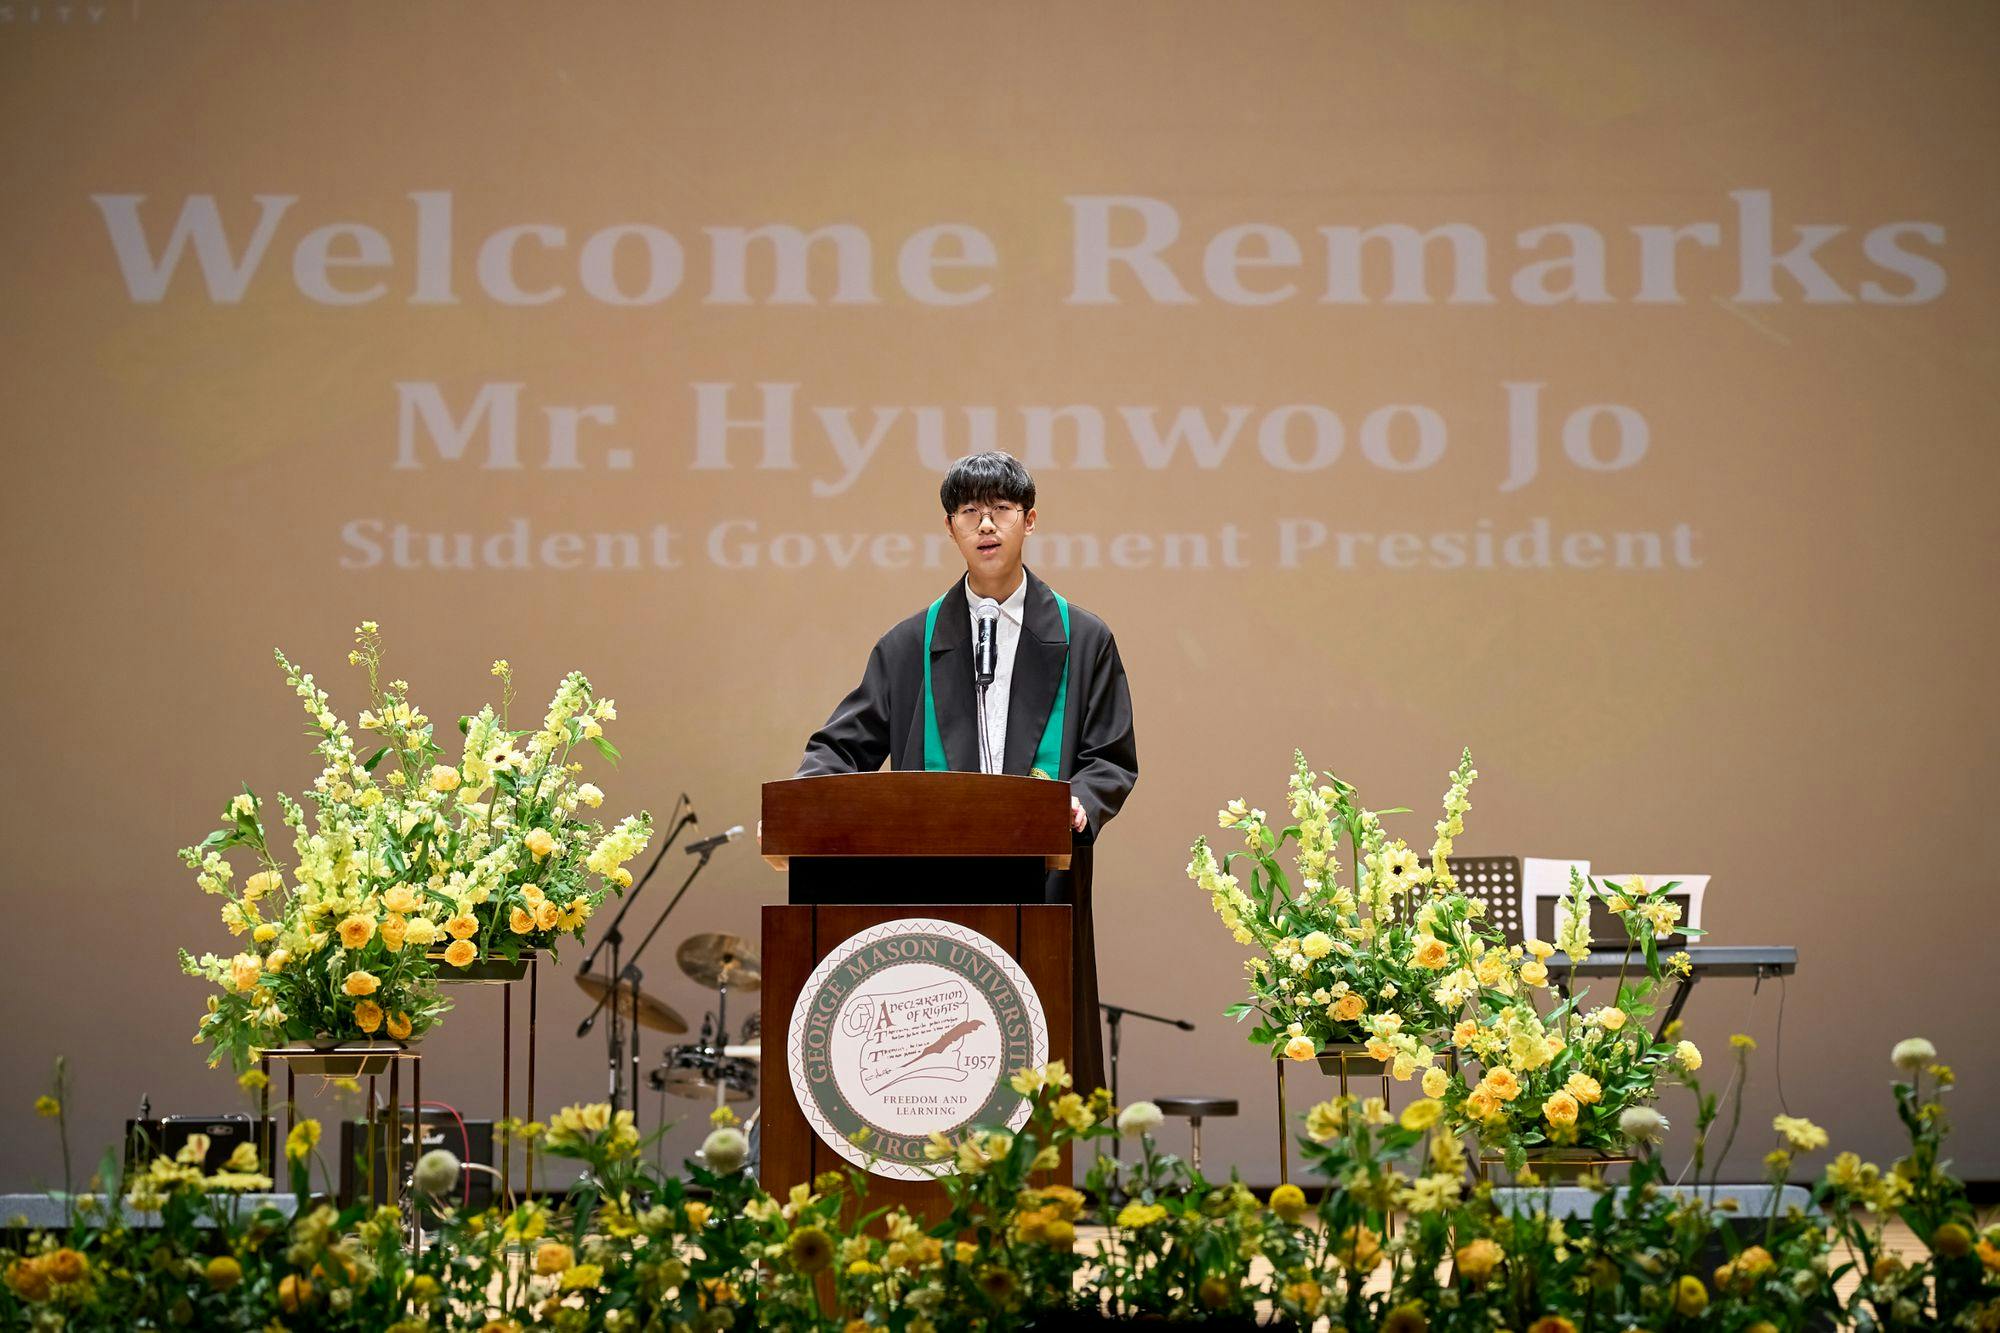 Hyunwoo Jo